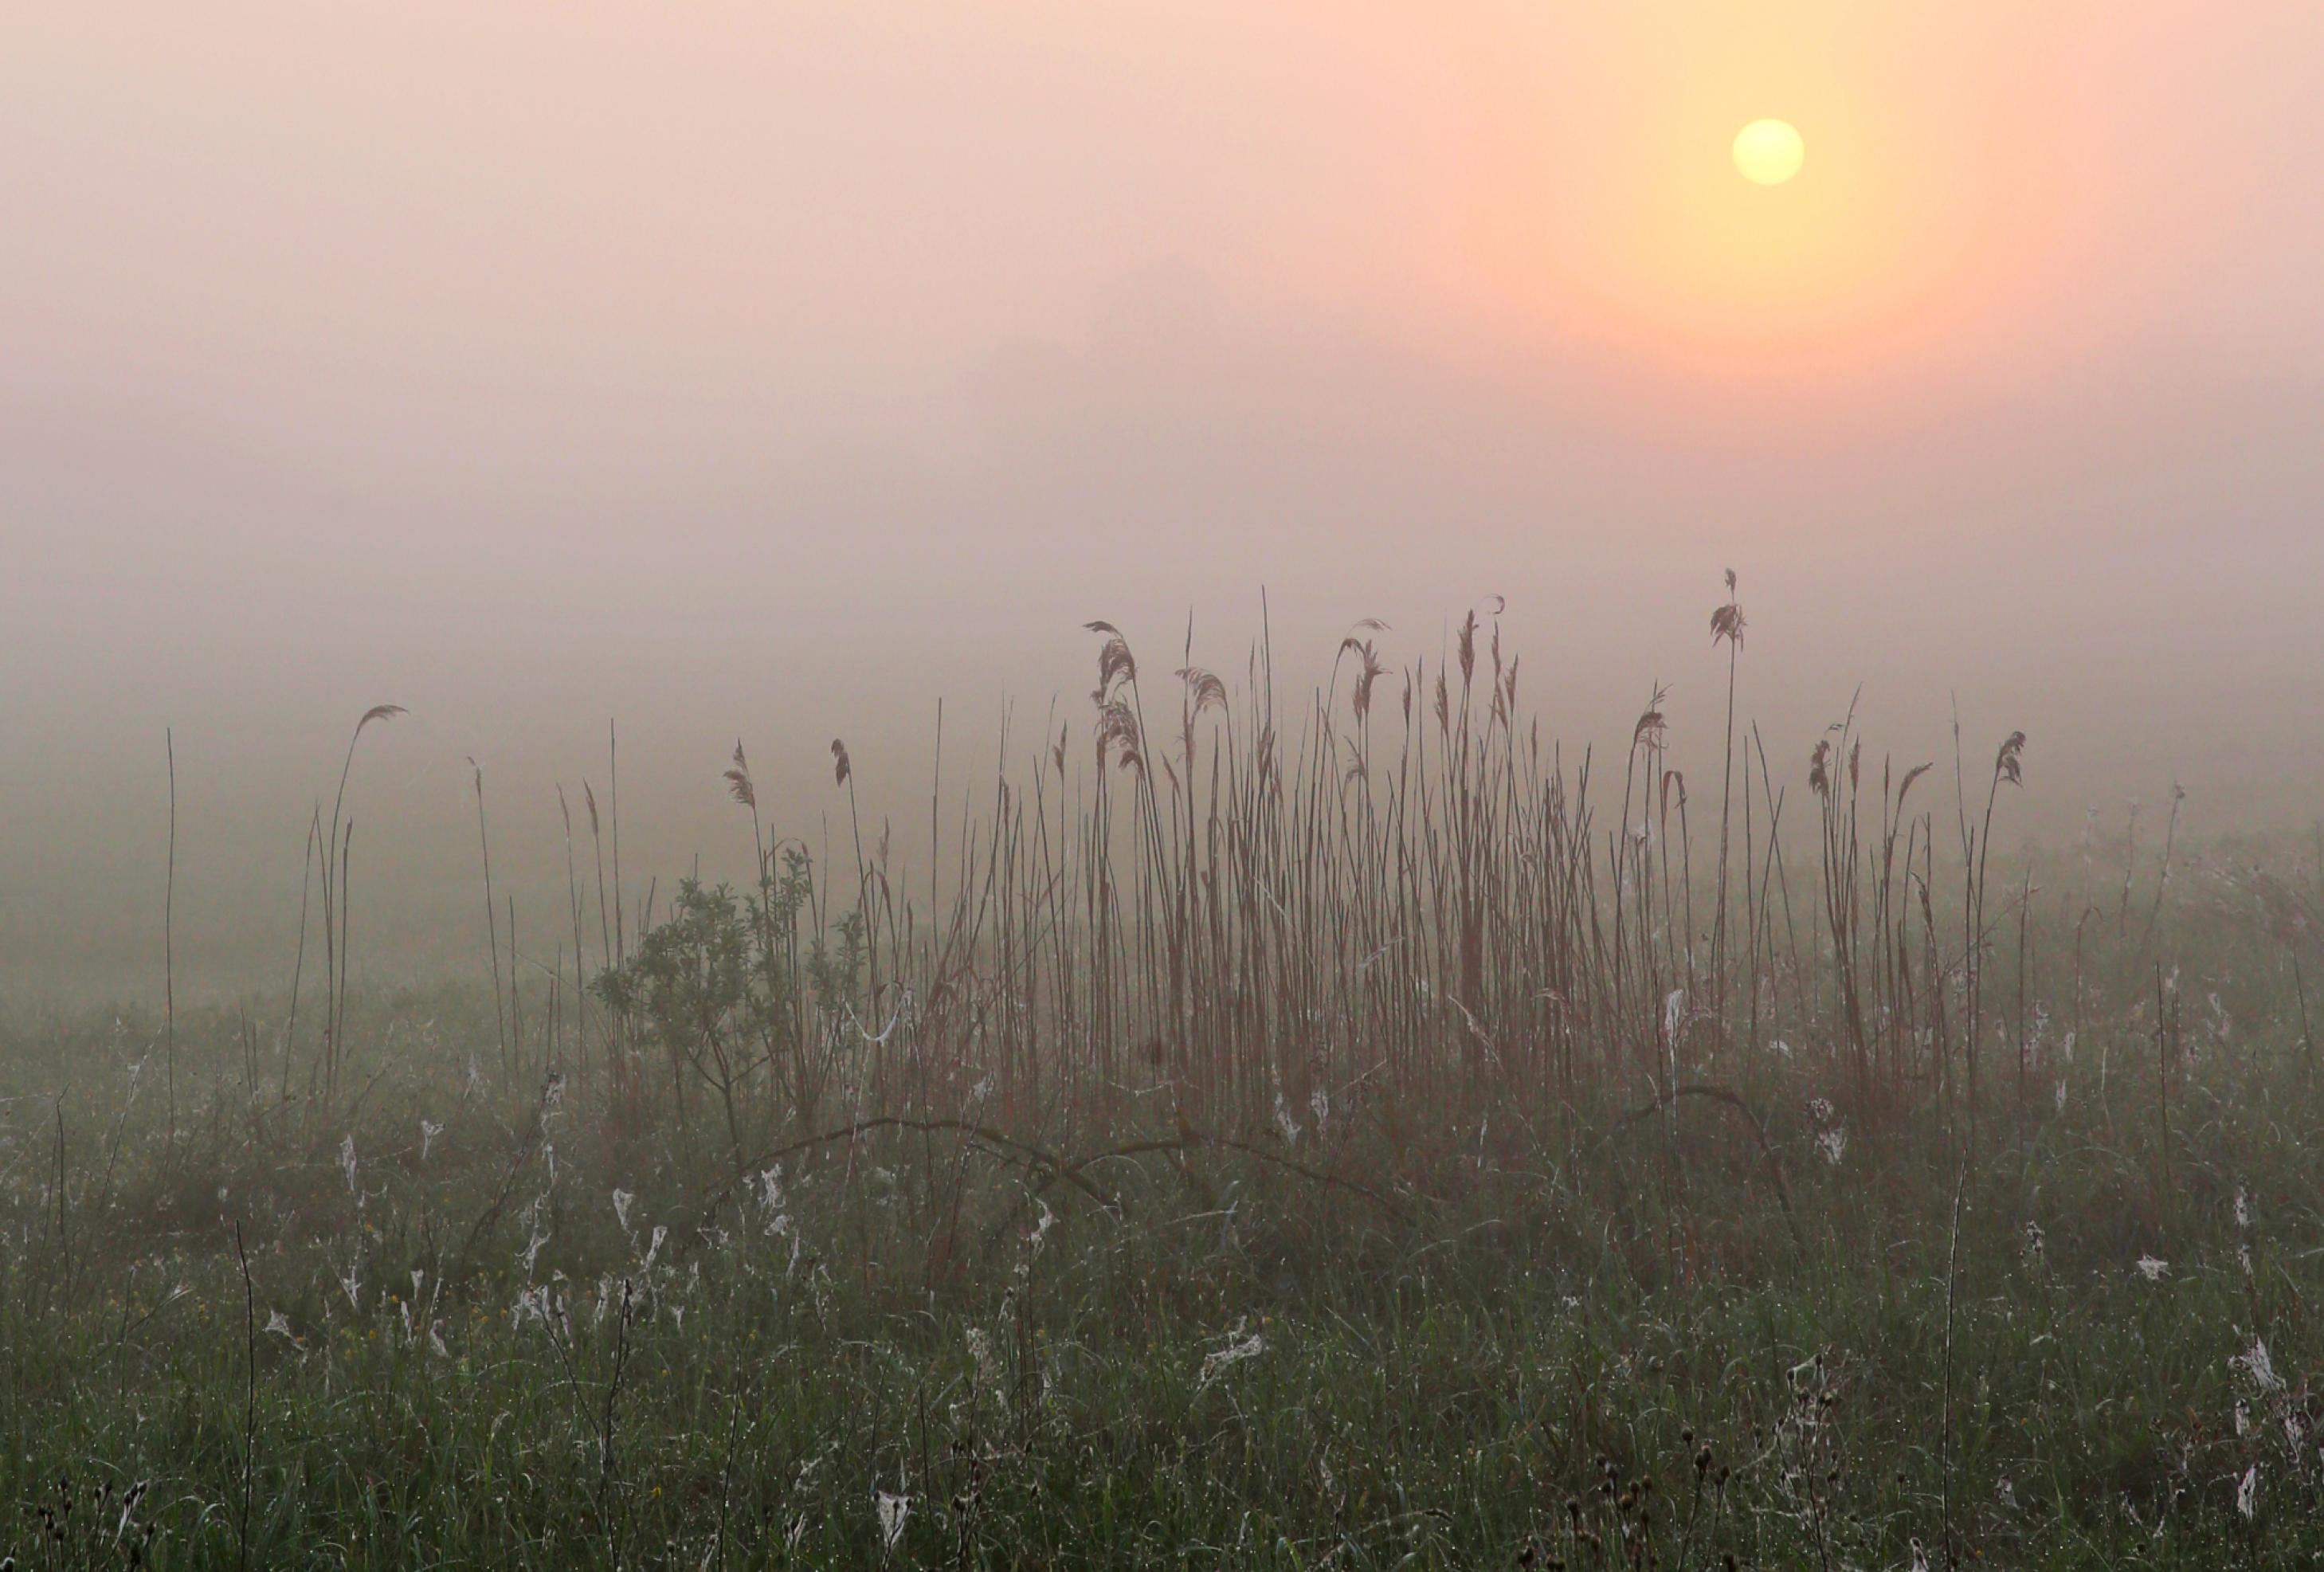 Morgenstimmung in einem Moor, im Vordergrund Schilf, im Hintergrund die im Nebel verhangene Sonne beim Aufgehen